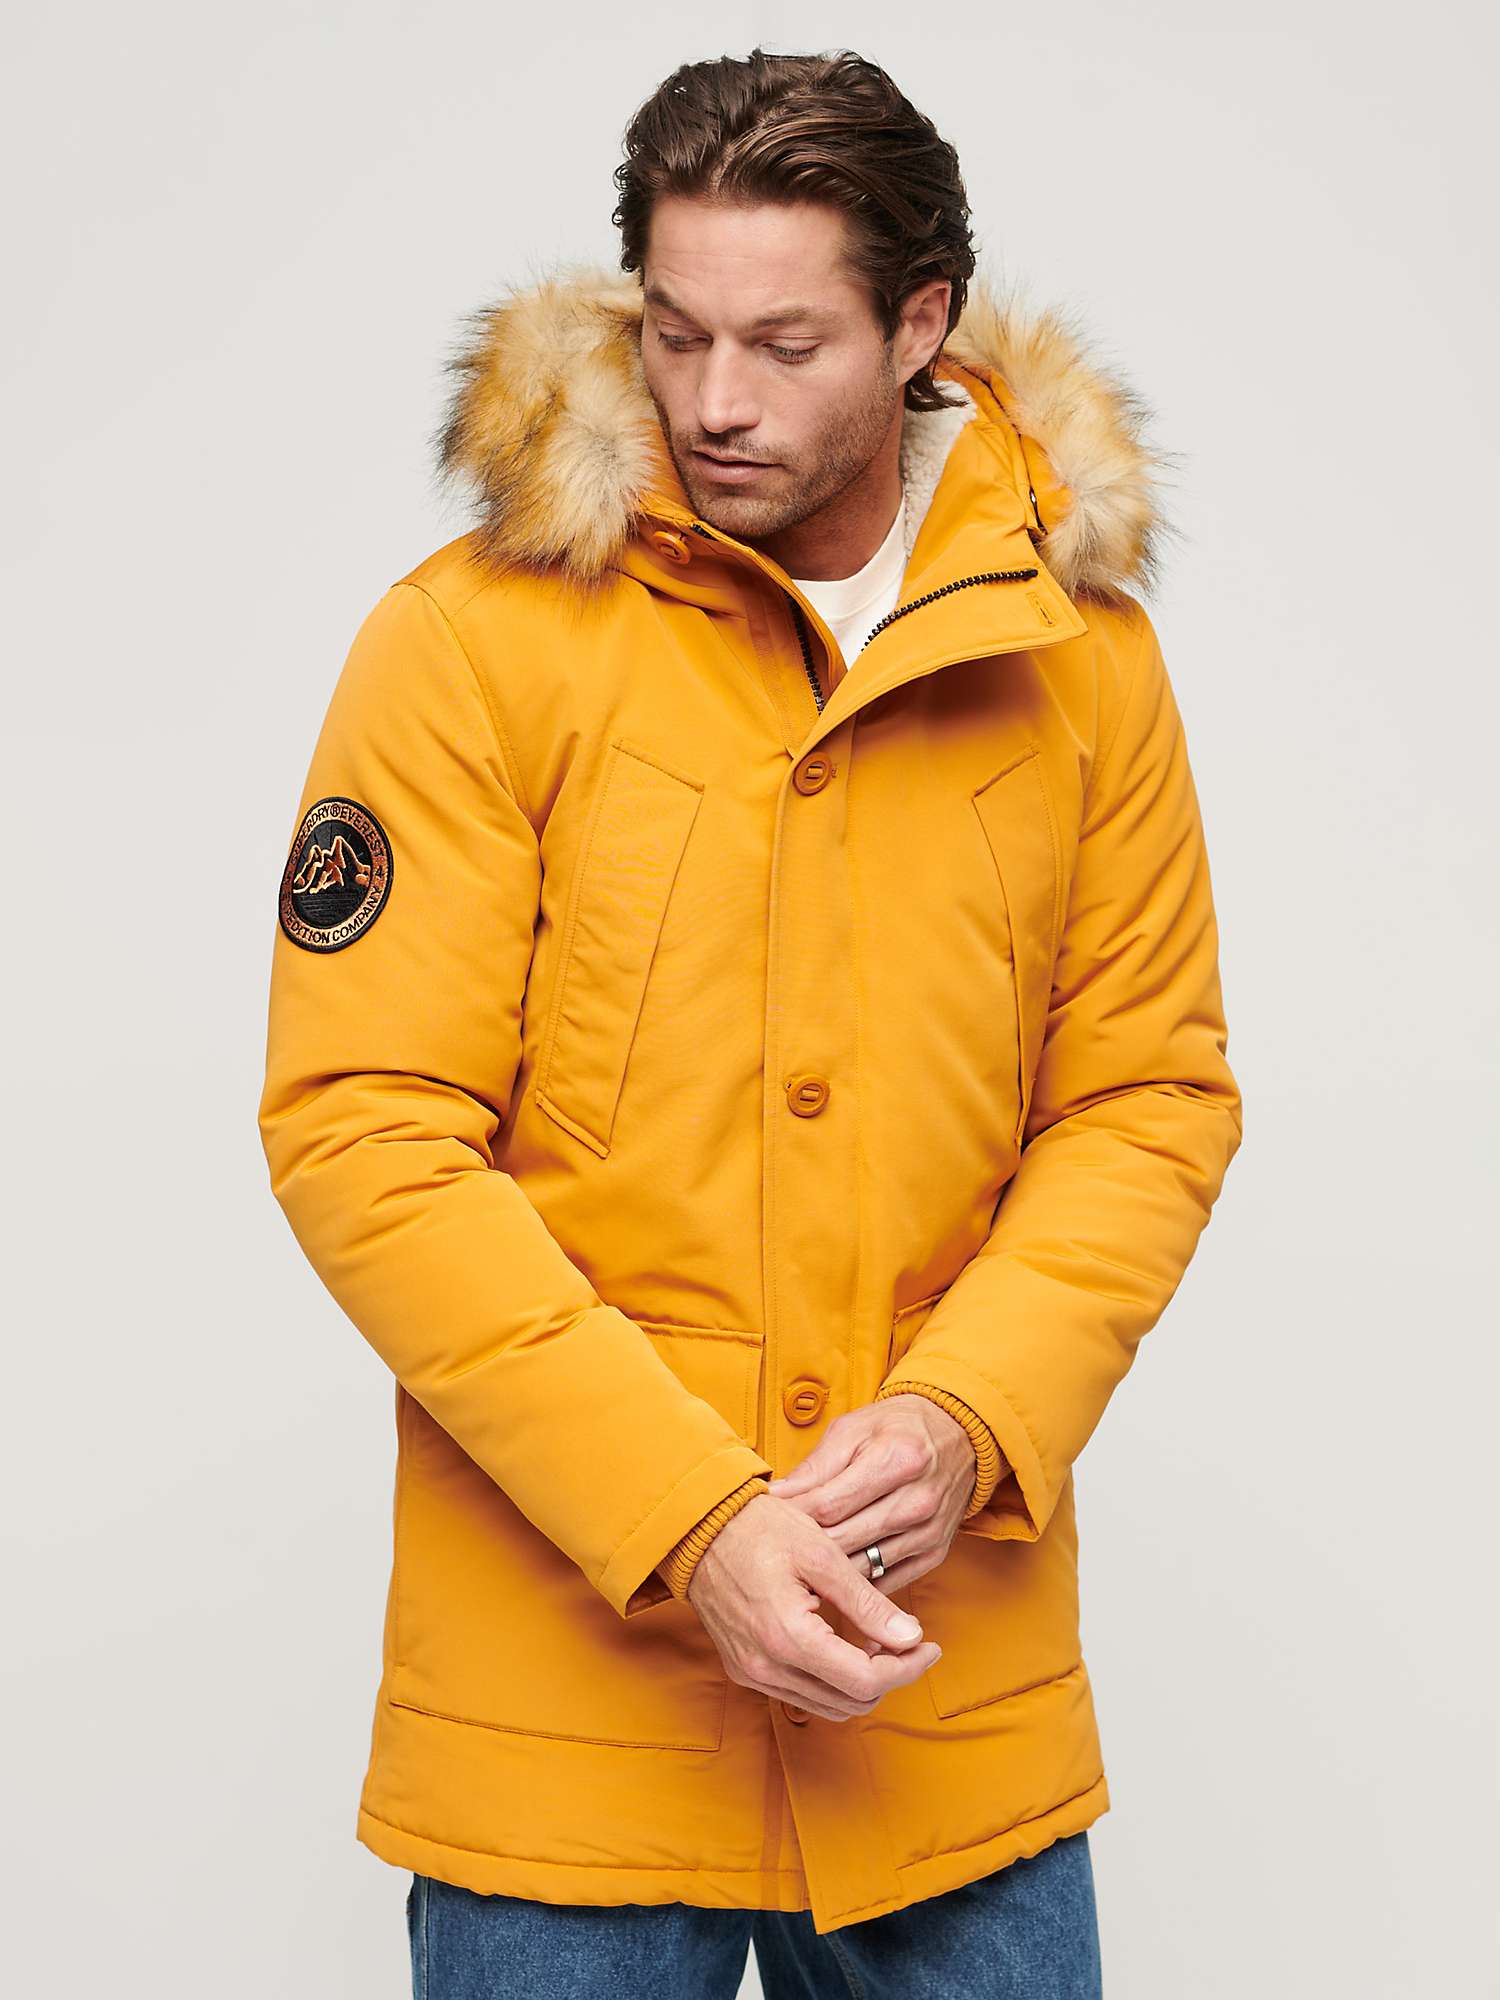 Buy Superdry Everest Faux Fur Hooded Parka Coat Online at johnlewis.com